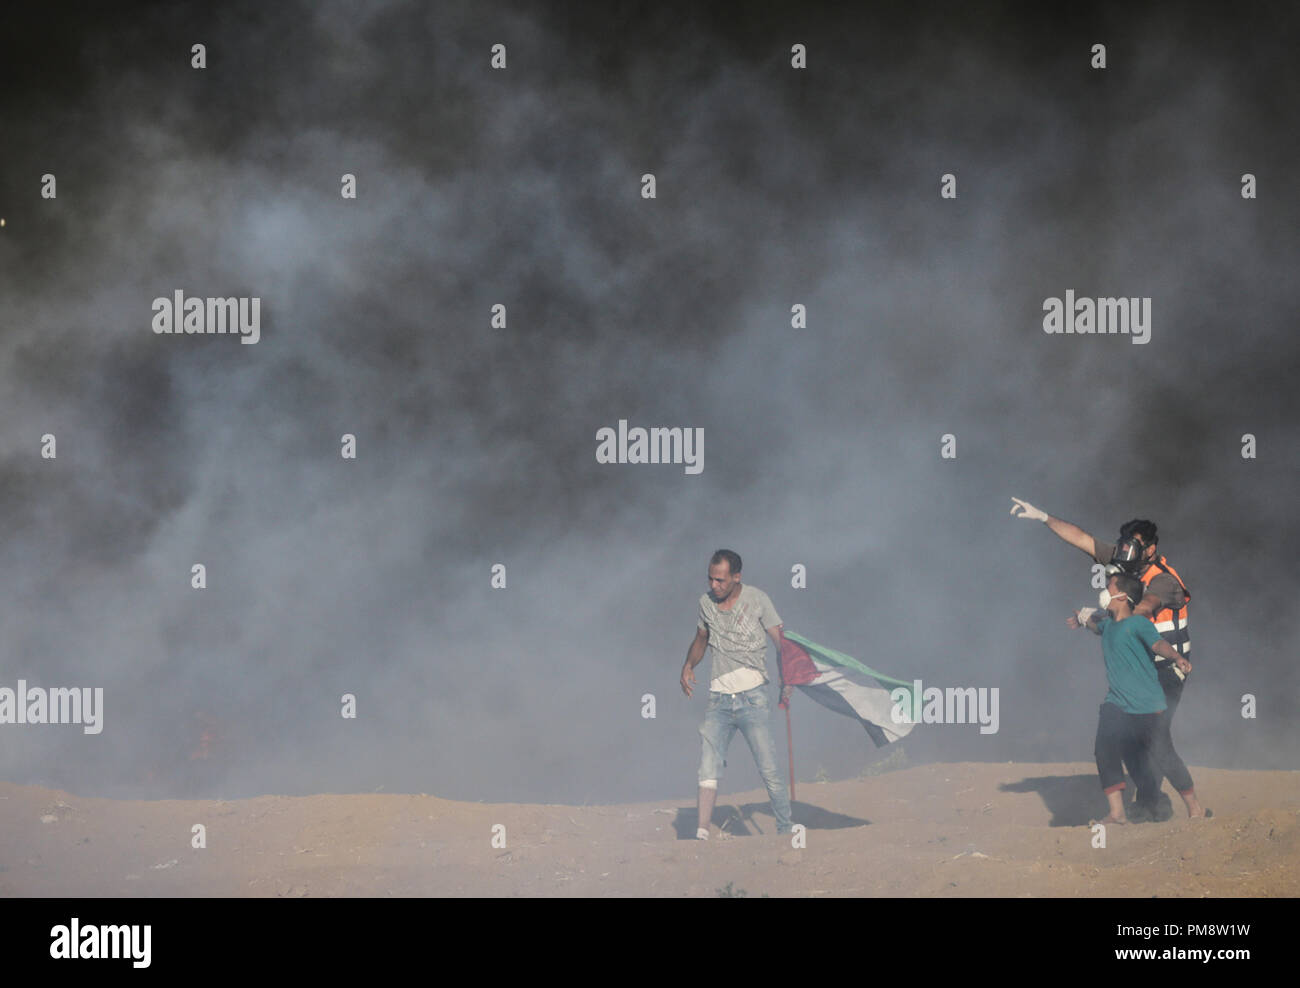 Retter und ein demonstrant gesehen mit Rauch während der zusammenstöße abgedeckt. Auseinandersetzungen zwischen palästinensischen Demonstranten und israelischen Kräfte während eines Protestes entlang der israelischen Zaun östlich von Gaza-stadt. Stockfoto